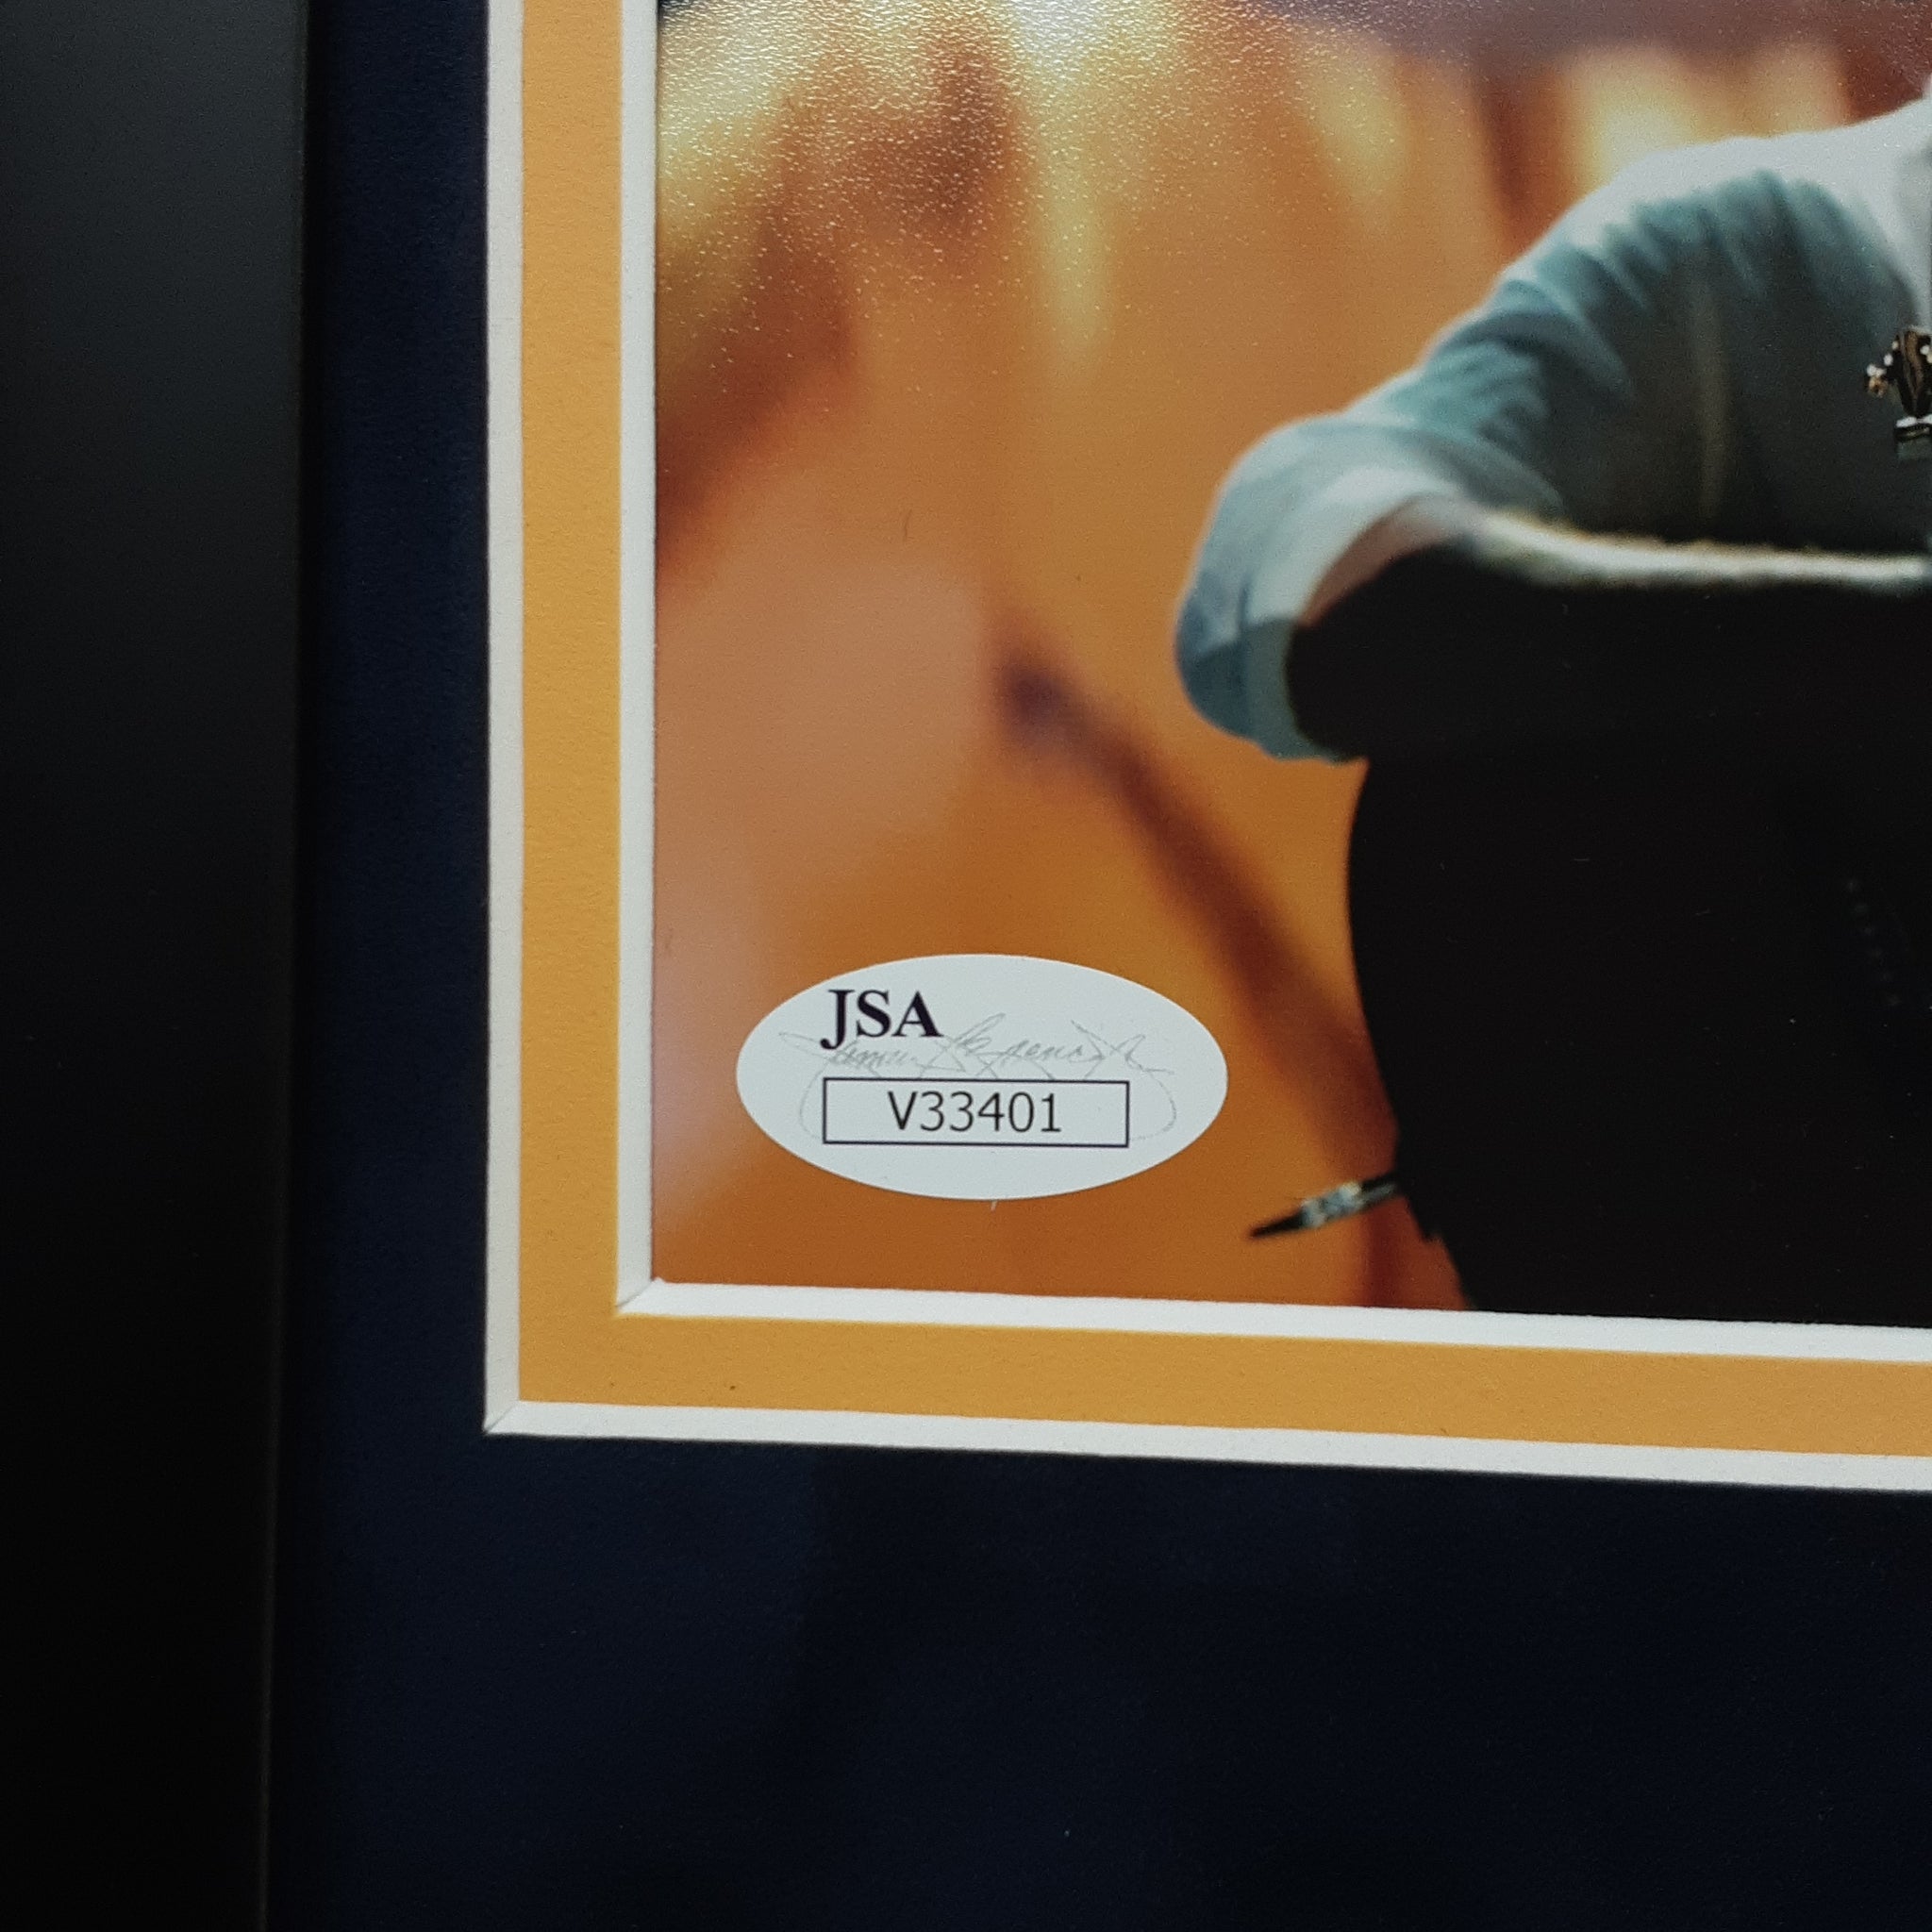 Rodney Atkins Authentic Signed Framed 8x10 Photo Autographed JSA